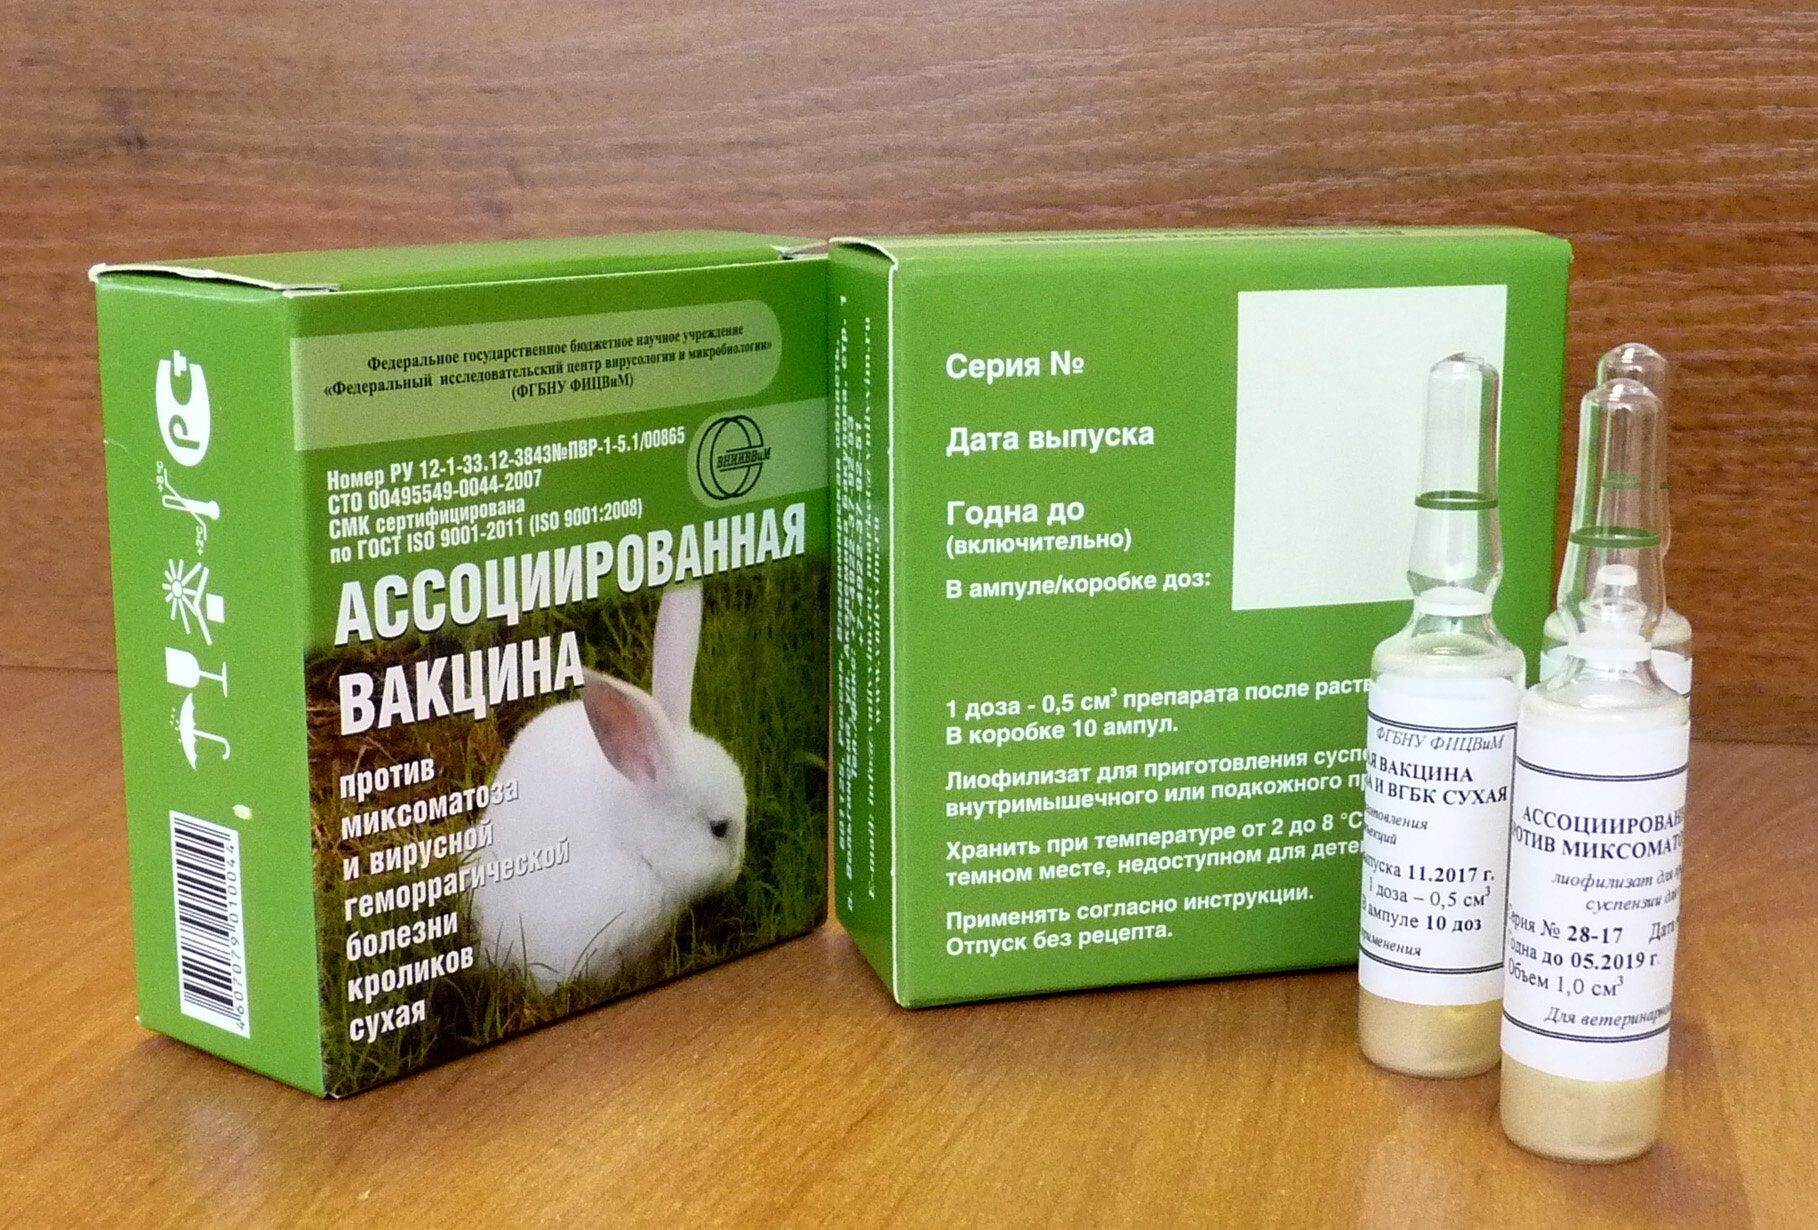 Ассоциированная вакцина для кроликов: для профилактики каких болезней используется, противопоказания и побочные реакции, как делать